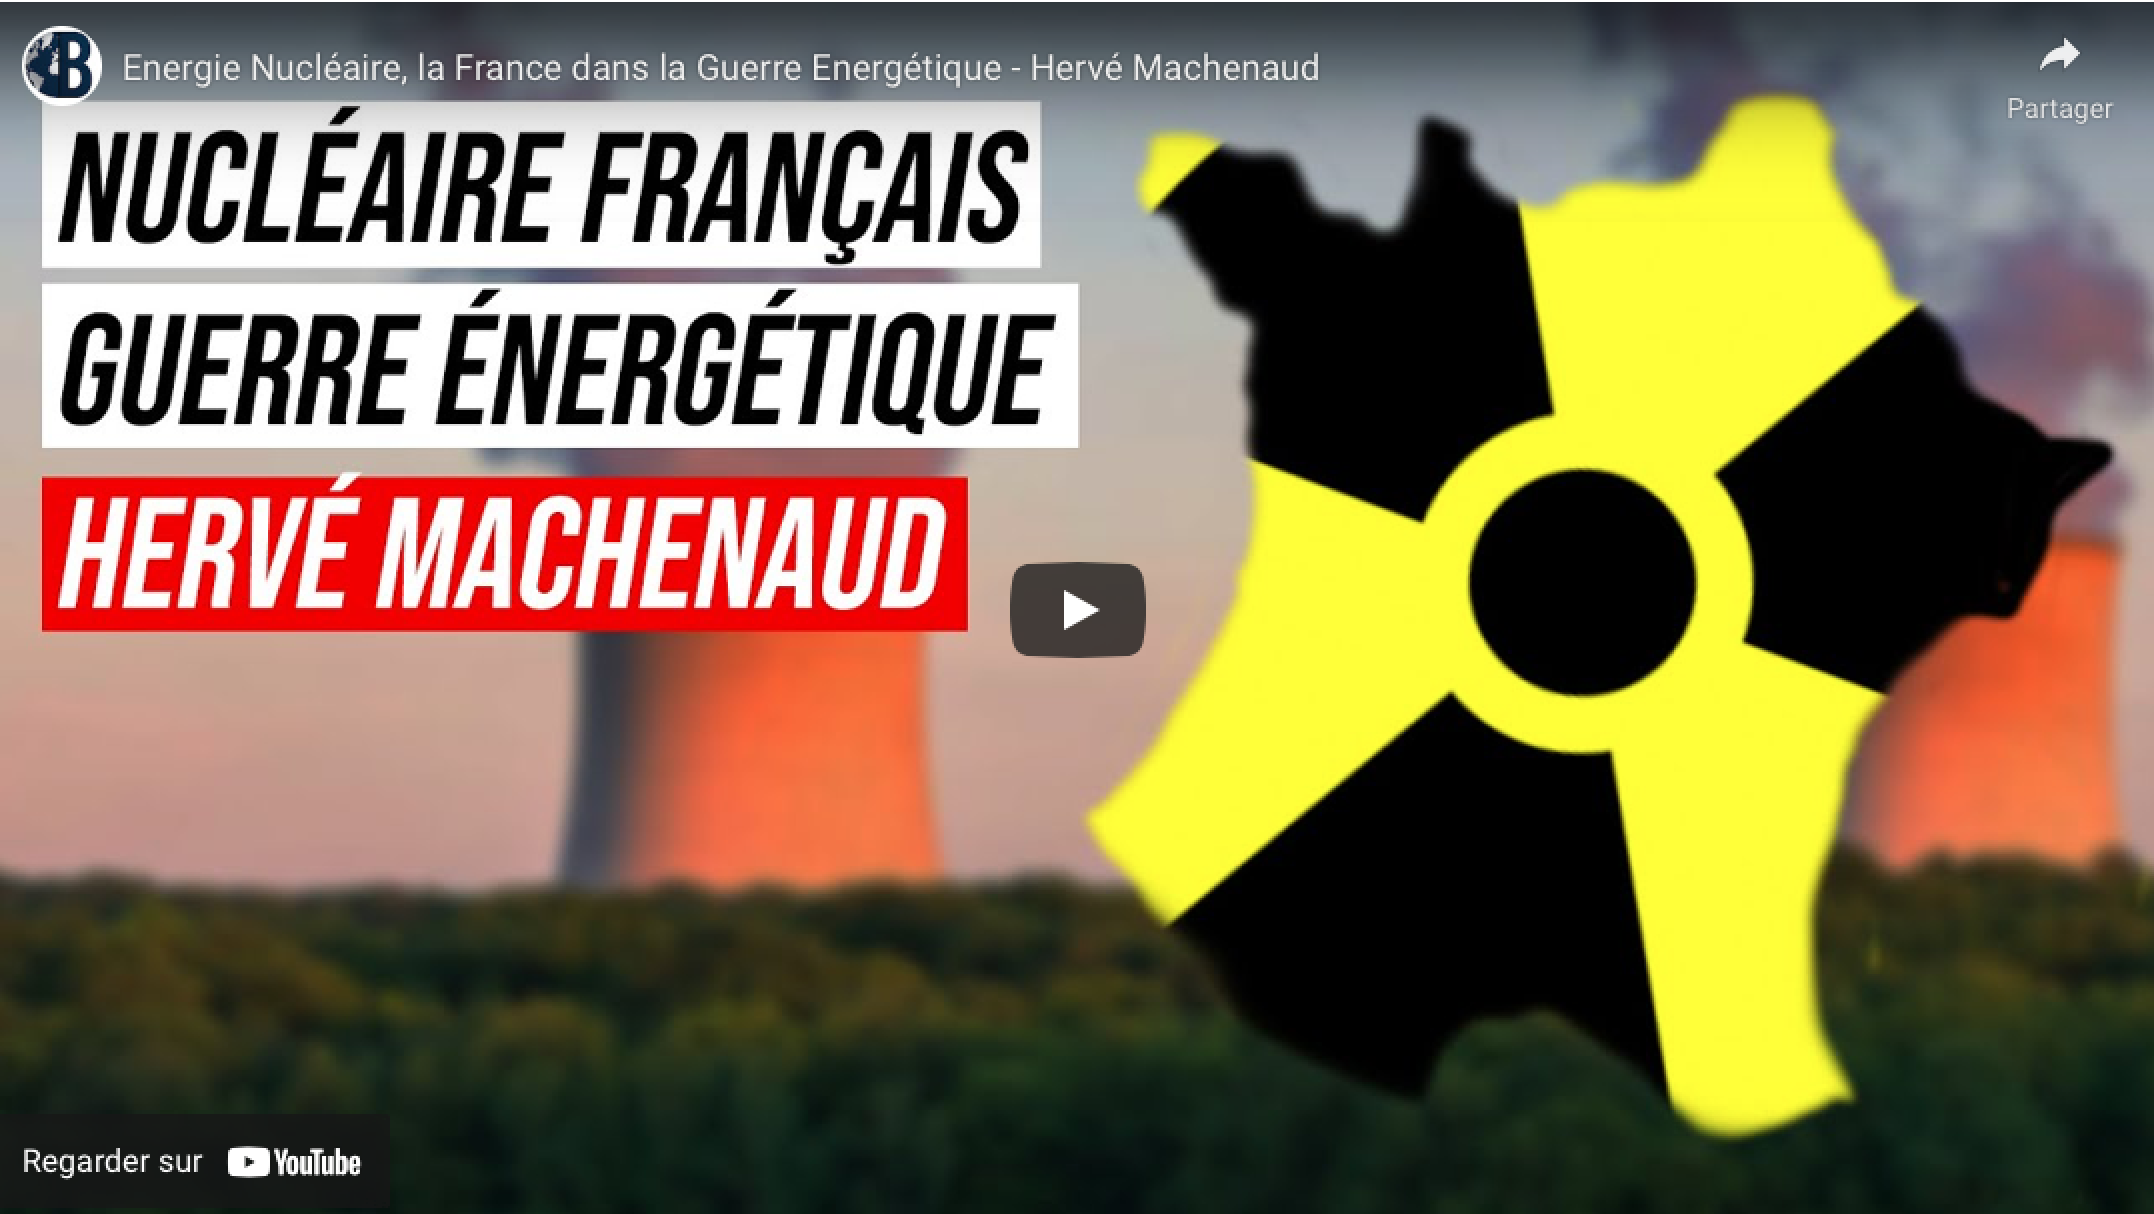 Energie Nucléaire, la France dans la Guerre Energétique – Hervé Machenaud